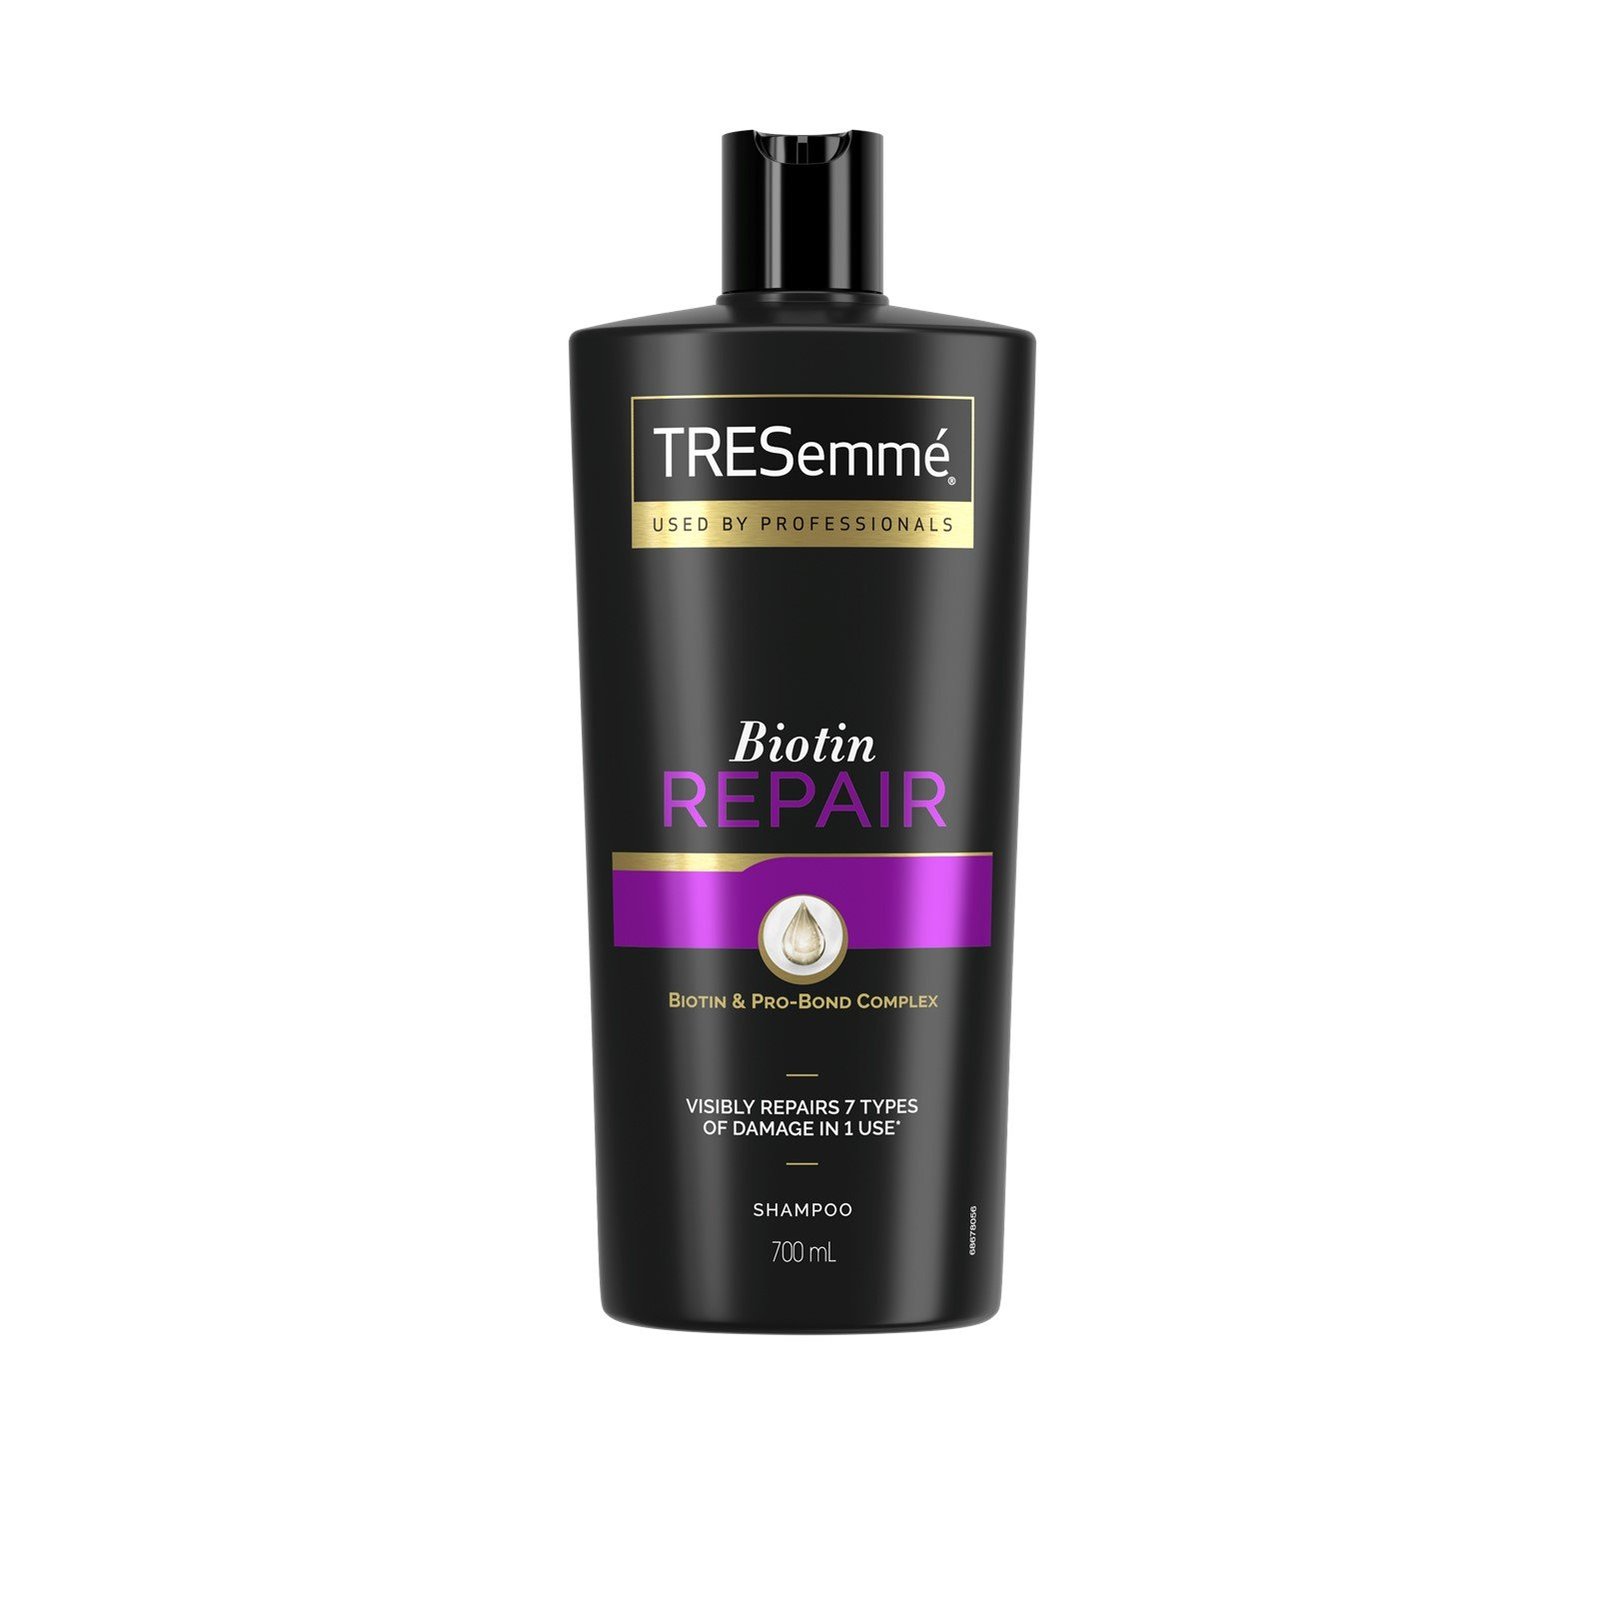 TRESemmé Biotin Repair Shampoo 700ml (23.6 fl oz)